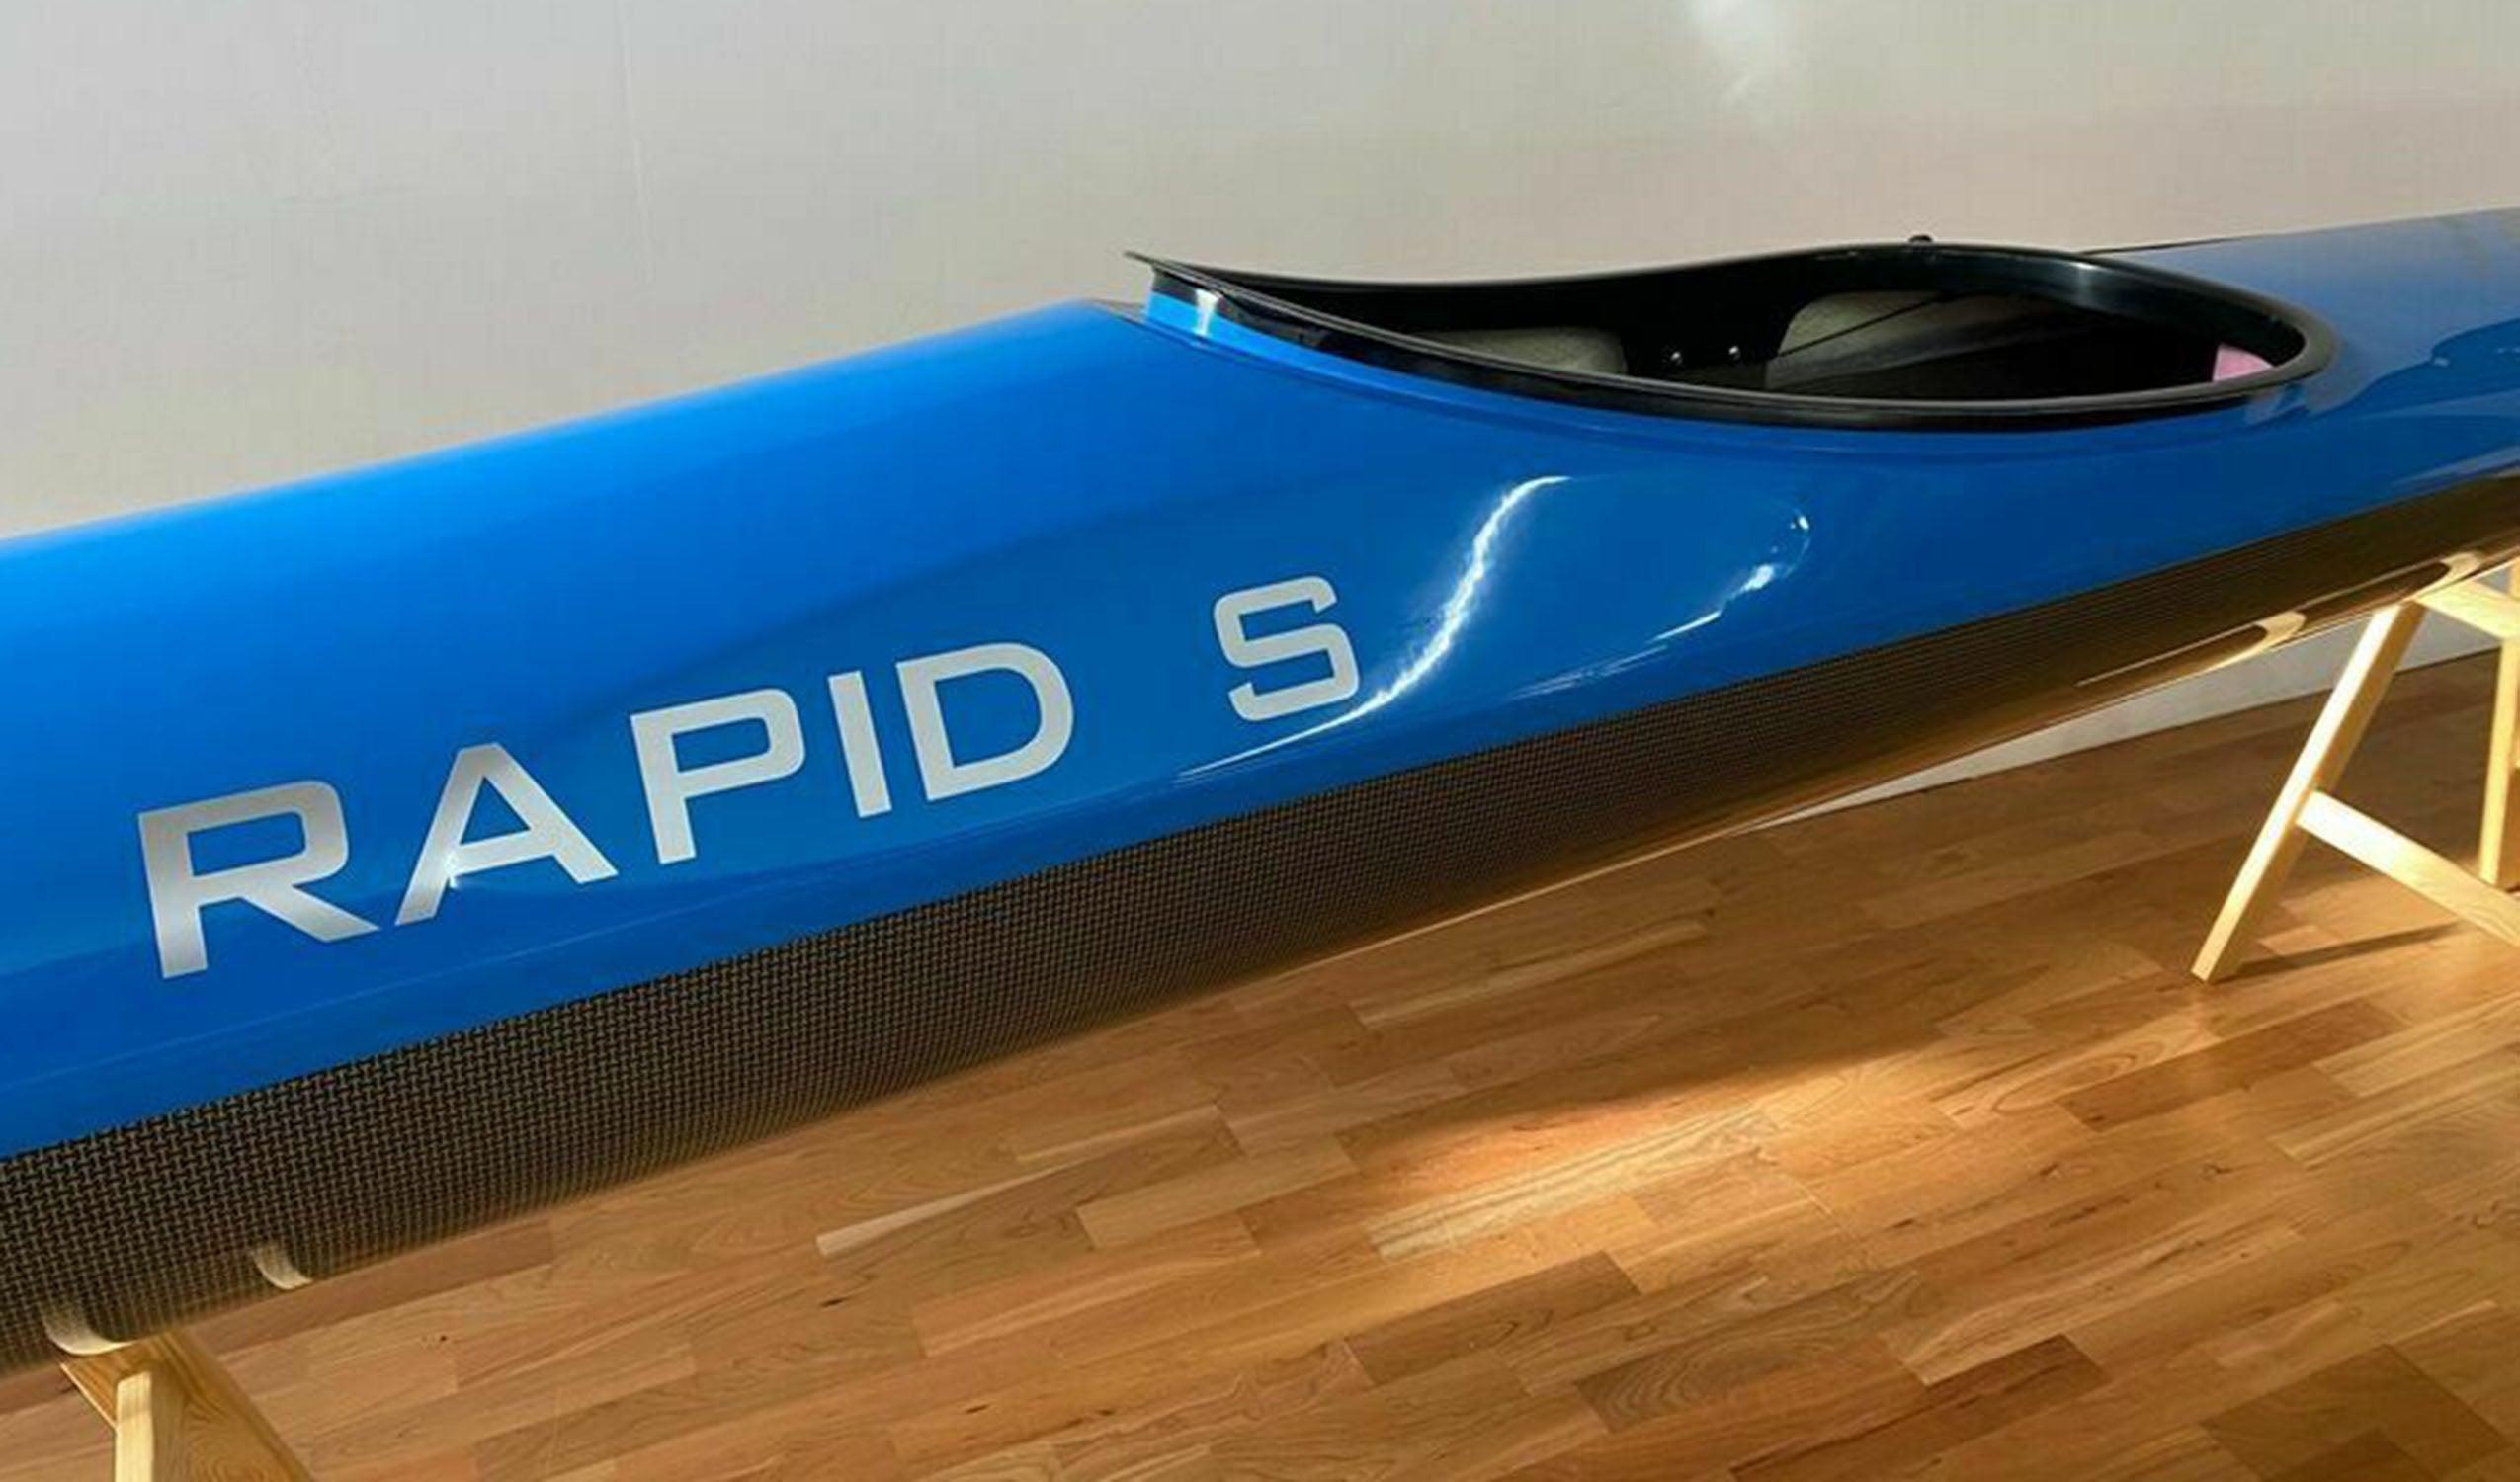 Produktbild von Kajak " Rapid S Multisport-blau " der Marke STELLAR Lightweight für 3290.00 €. Erhältlich online bei Lite Venture ( www.liteventure.de )